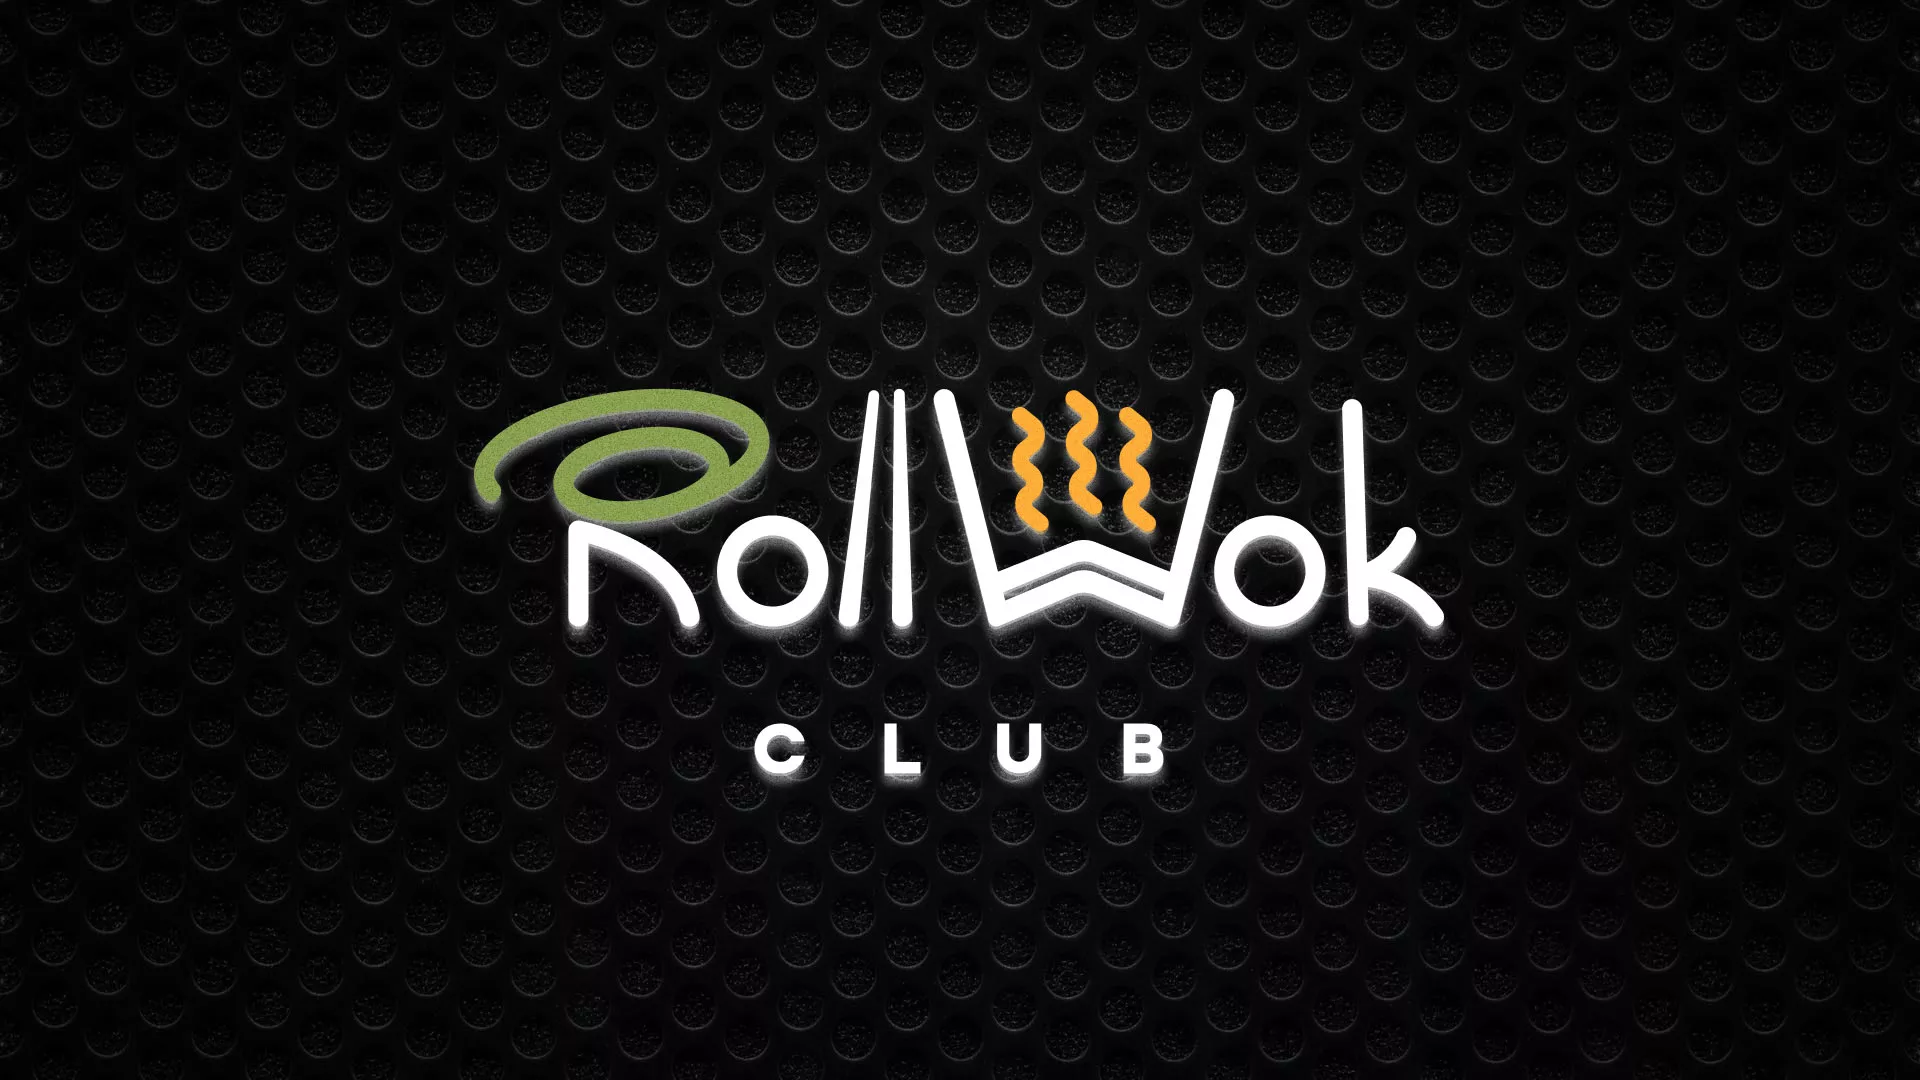 Брендирование торговых точек суши-бара «Roll Wok Club» в Московском